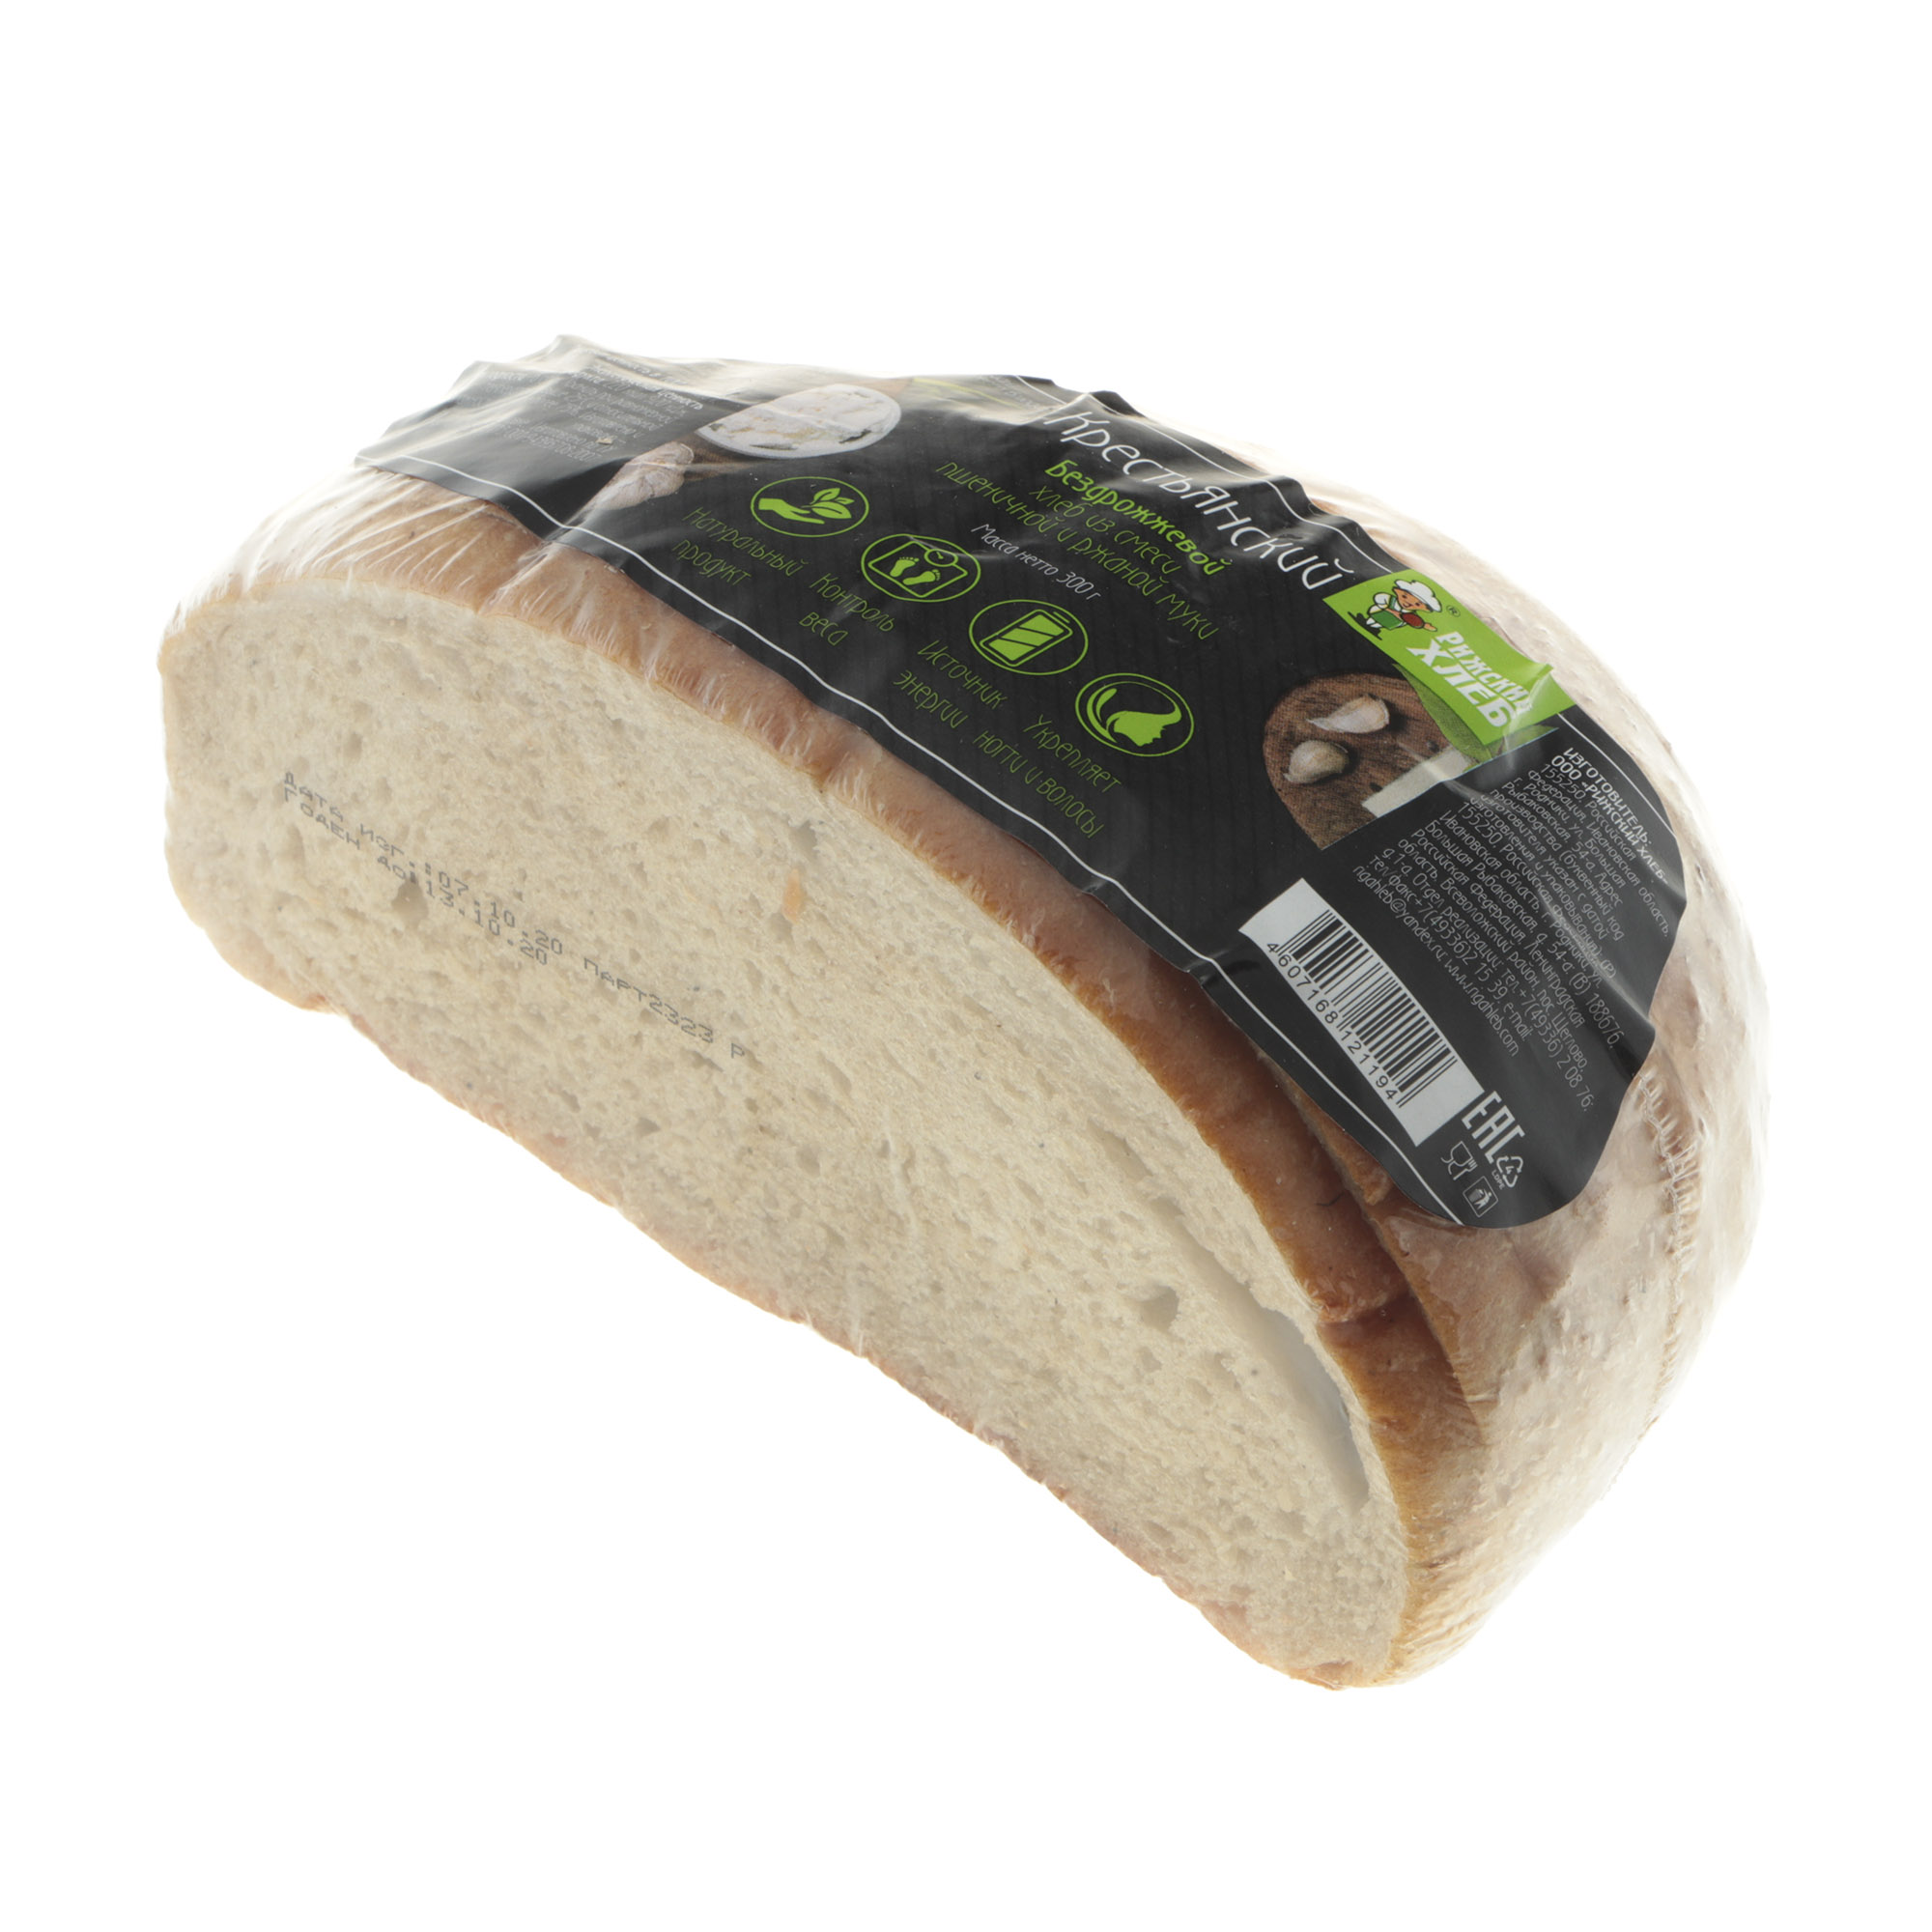 Хлеб Рижский хлеб крестьянский 300 г хлеб рижский хлеб ароматный с изюмом 300 г